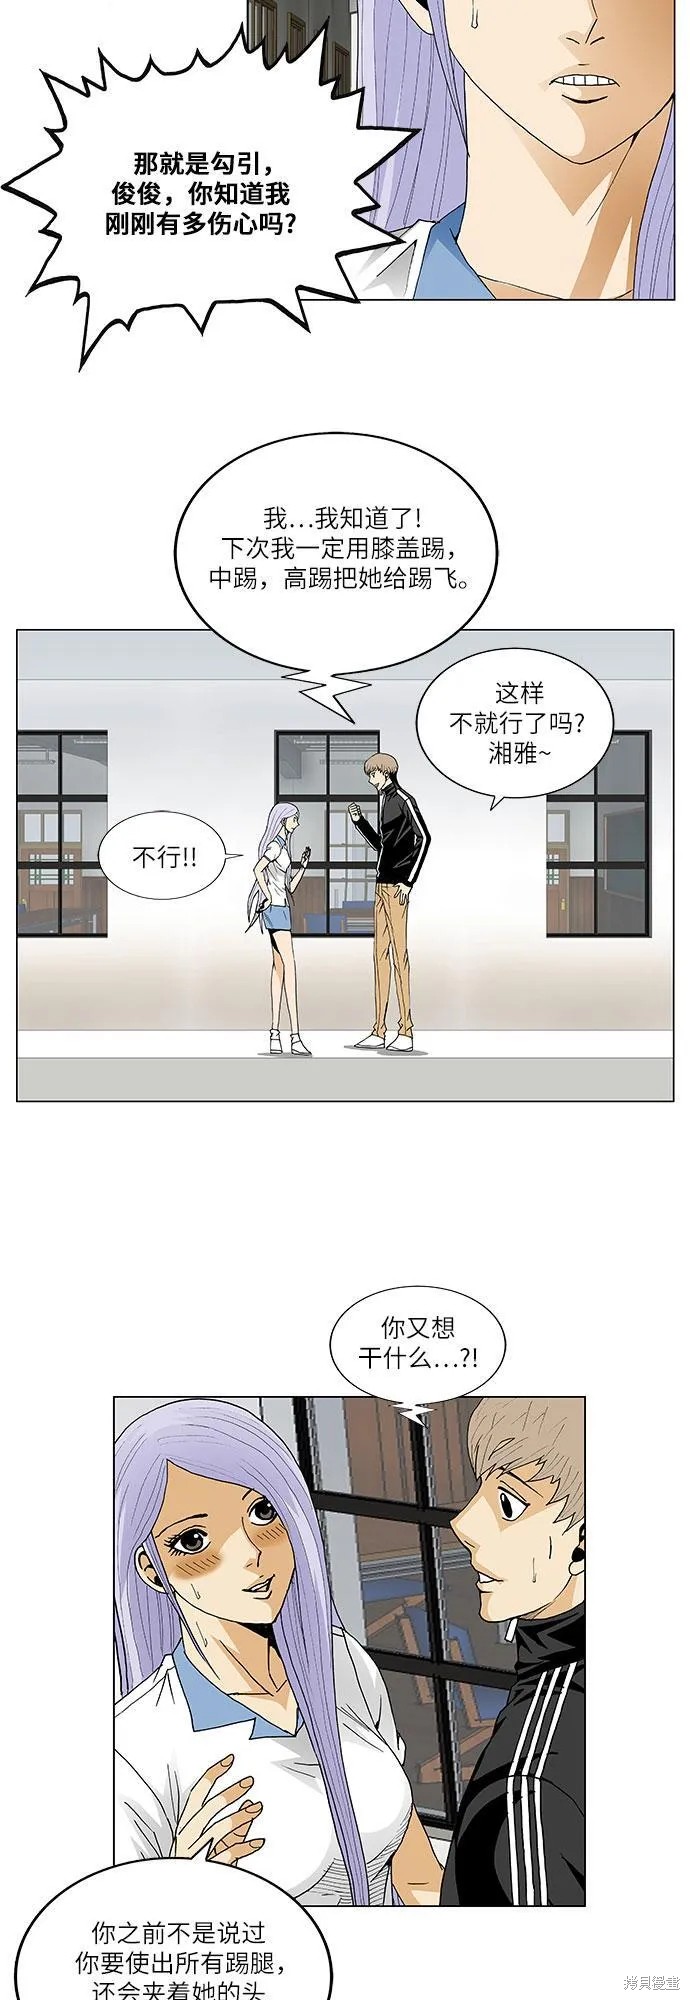 最强传说姜海孝漫画,第65话19图